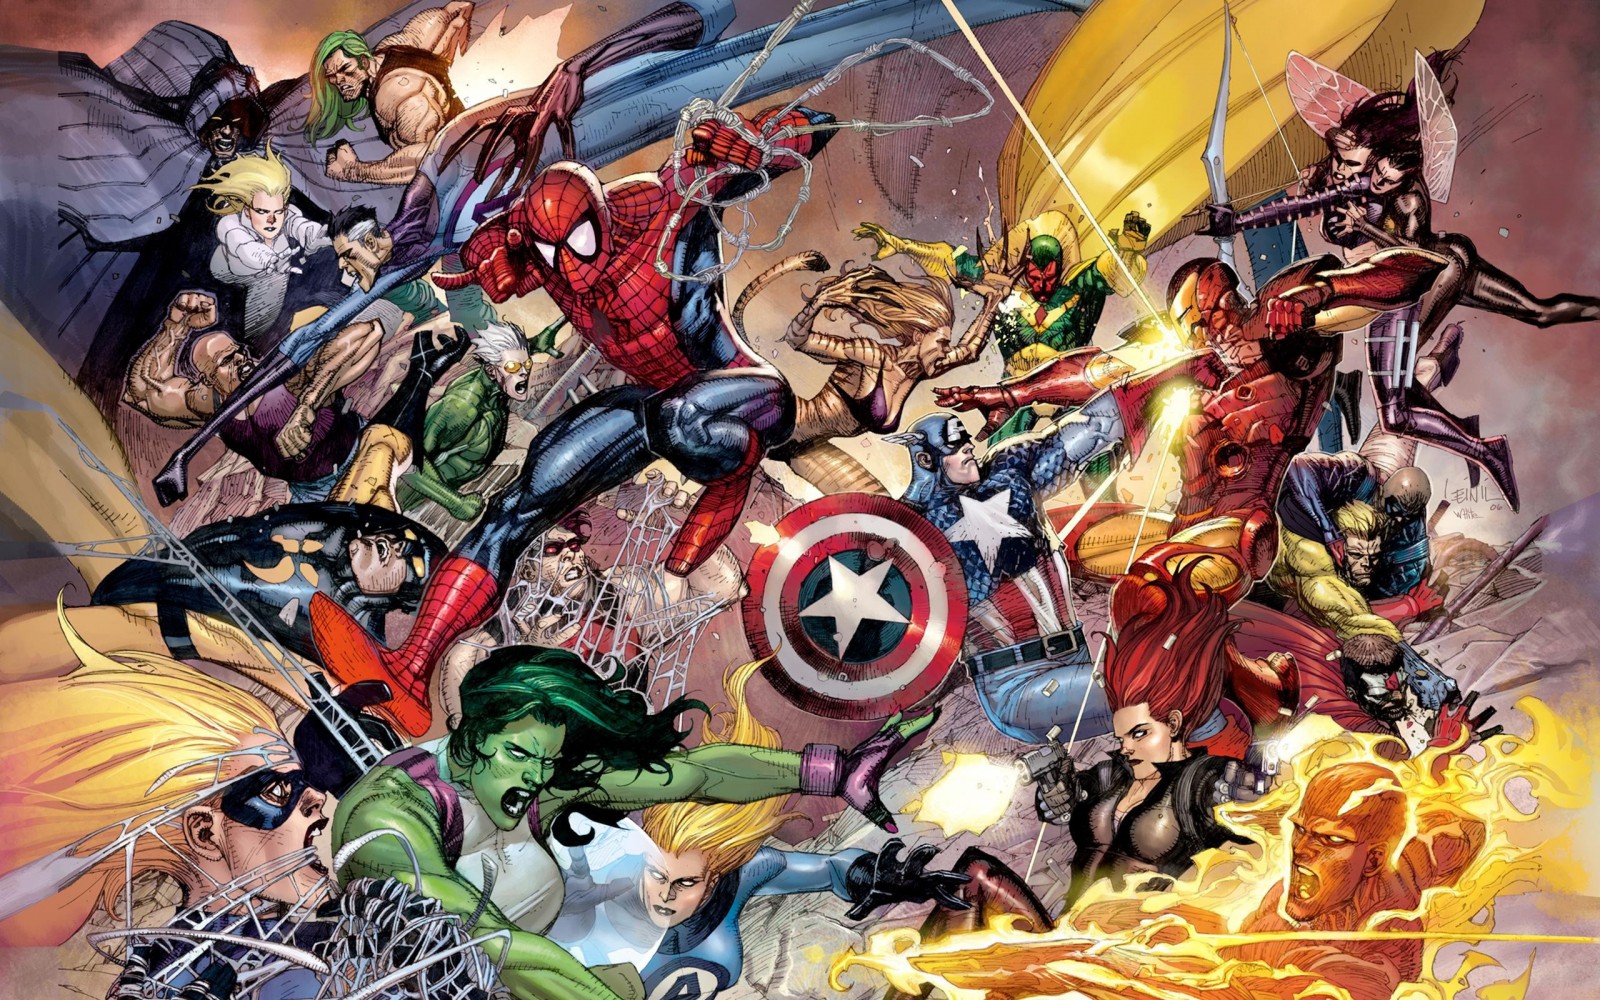 Guida ai fumetti Marvel: come iniziare a leggere i fumetti degli